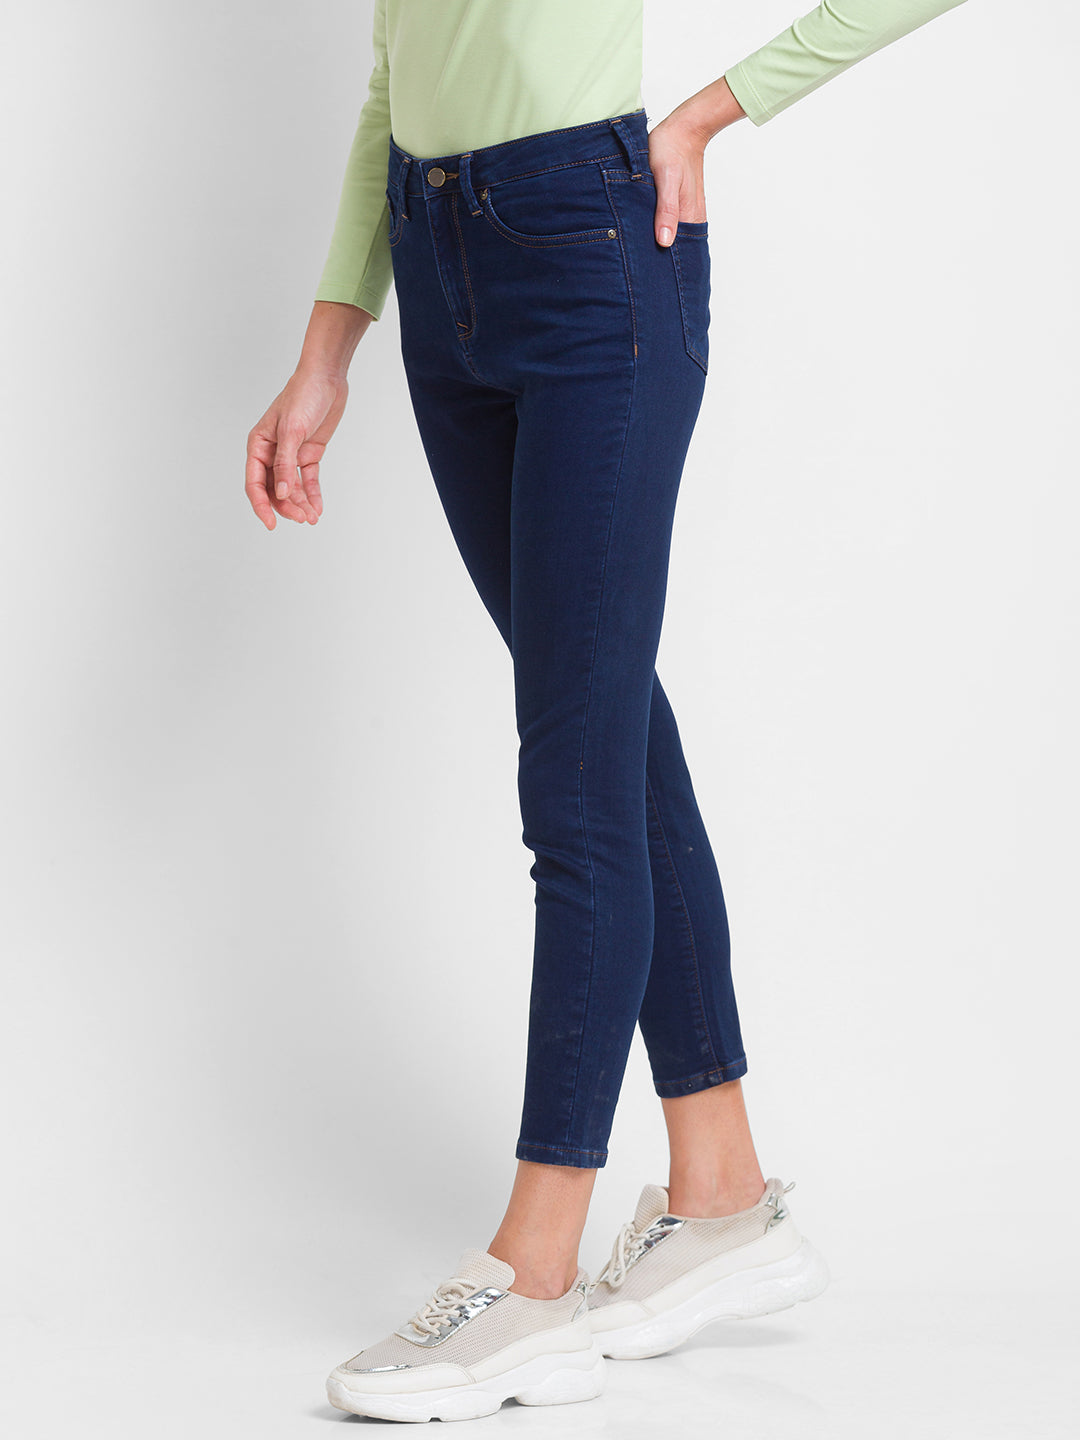 Trendy Footwear To Rock Skinny Jeans For Women - Styl Inc